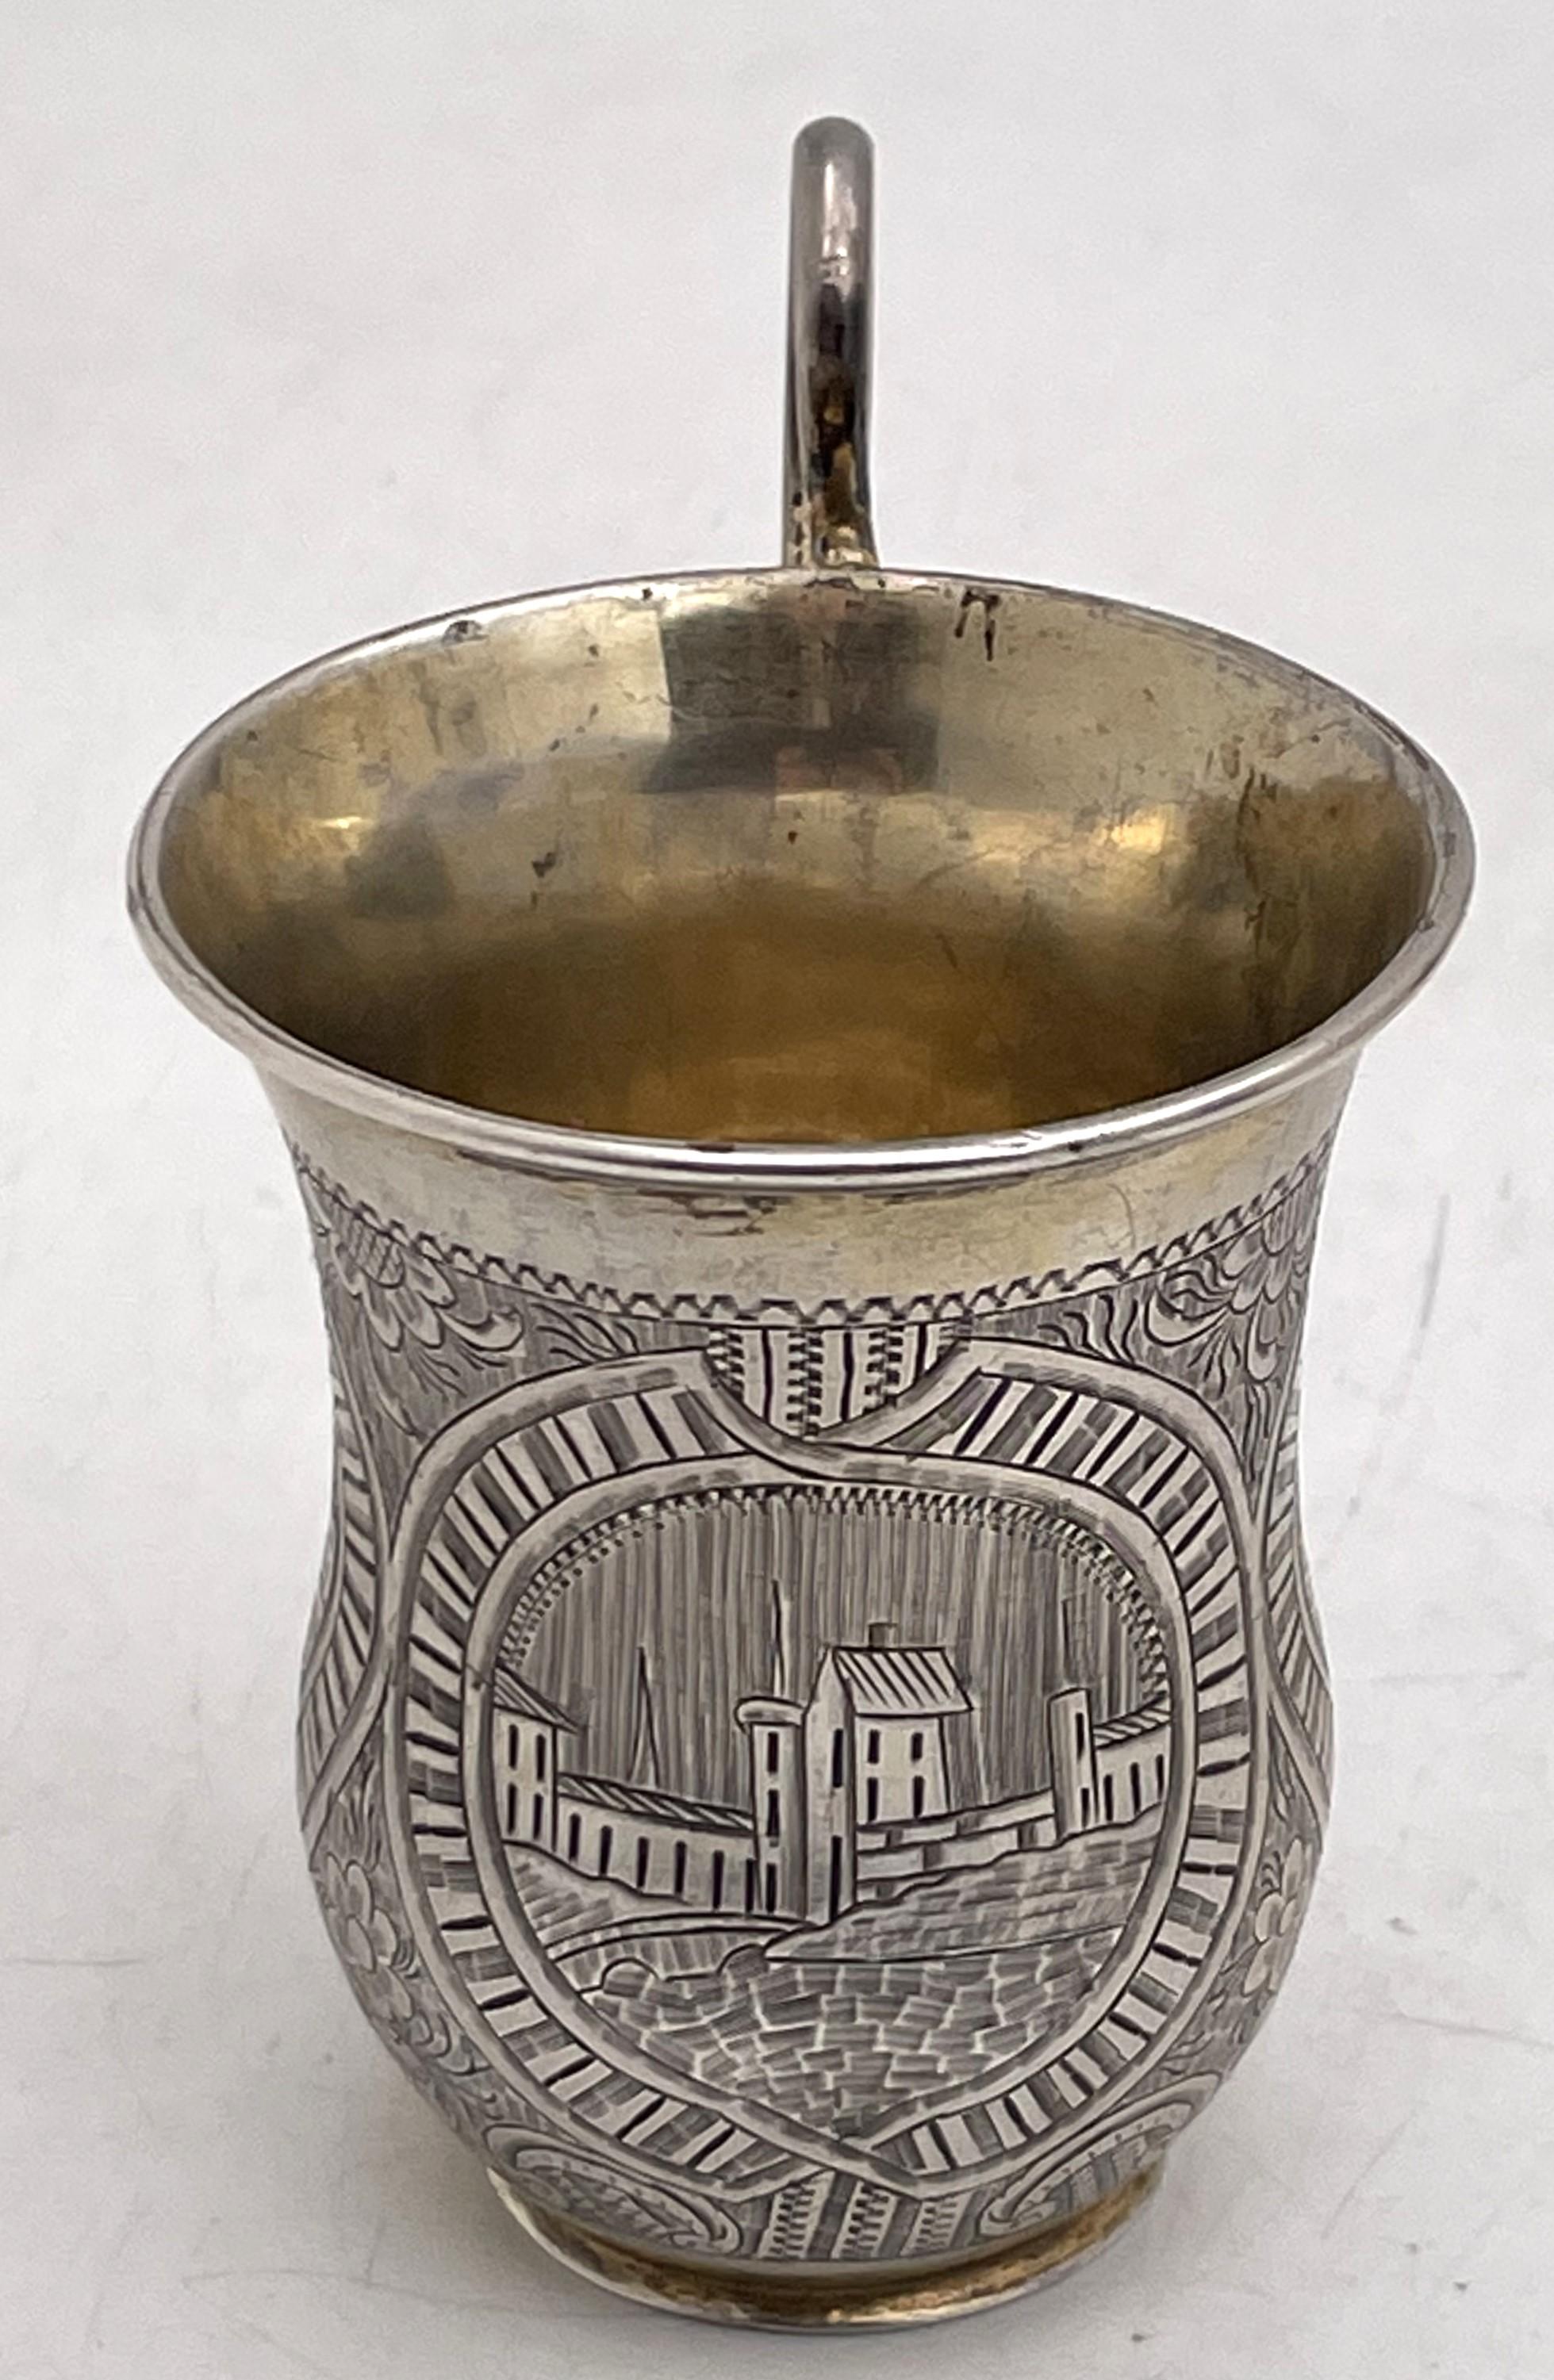 Chope à vodka russe en argent 0,84, partiellement dorée, fabriquée à Saint-Pétersbourg en 1851, présentant des motifs floraux et architecturaux stylisés. Il mesure 3 1/8'' de hauteur par 2 1/8'' de diamètre au sommet et porte les poinçons tels